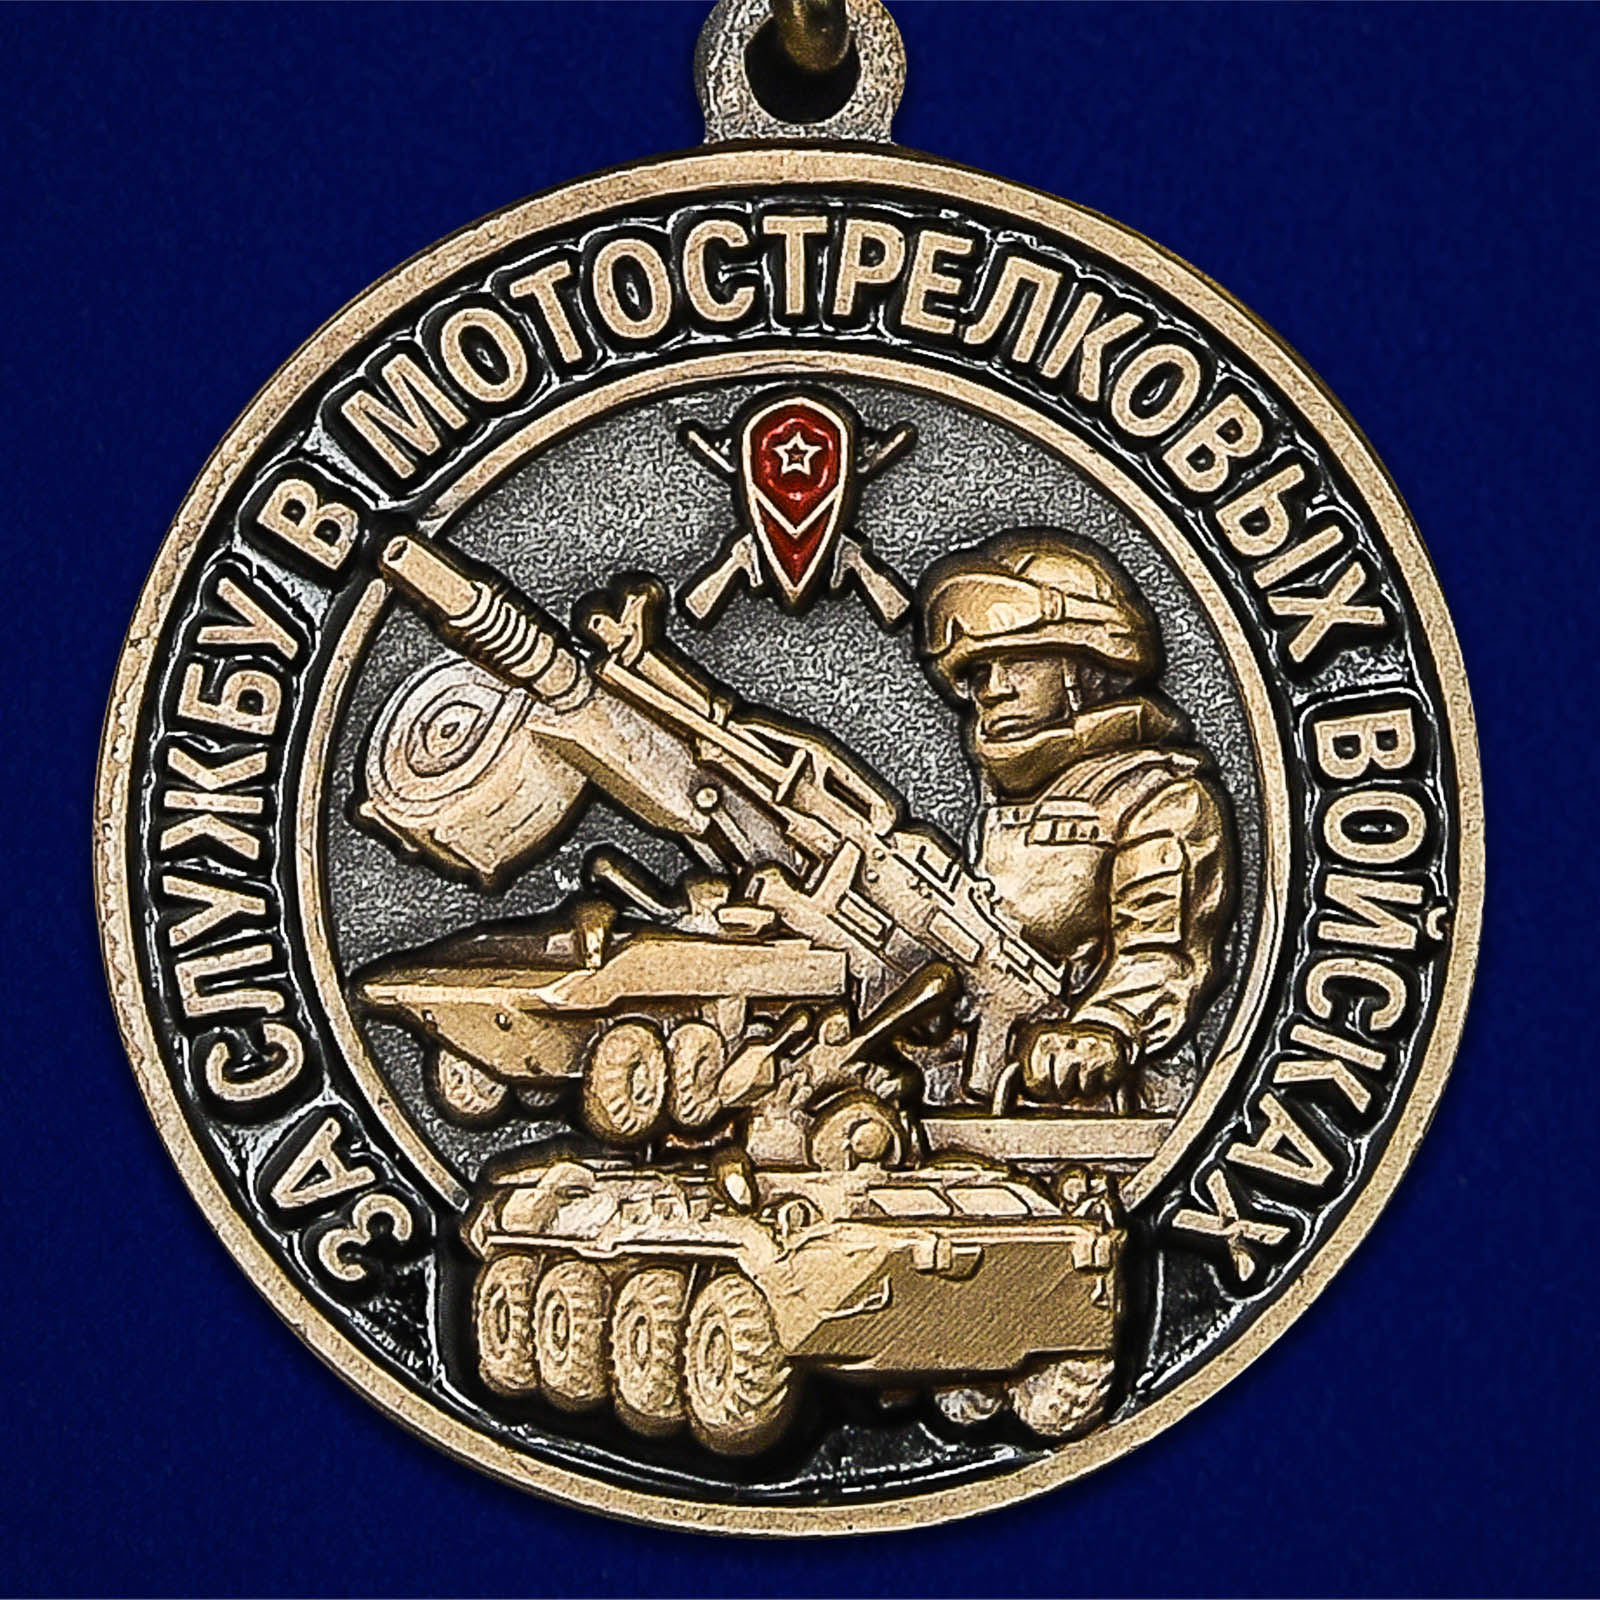 Медаль "За службу в Мотострелковых войсках" 